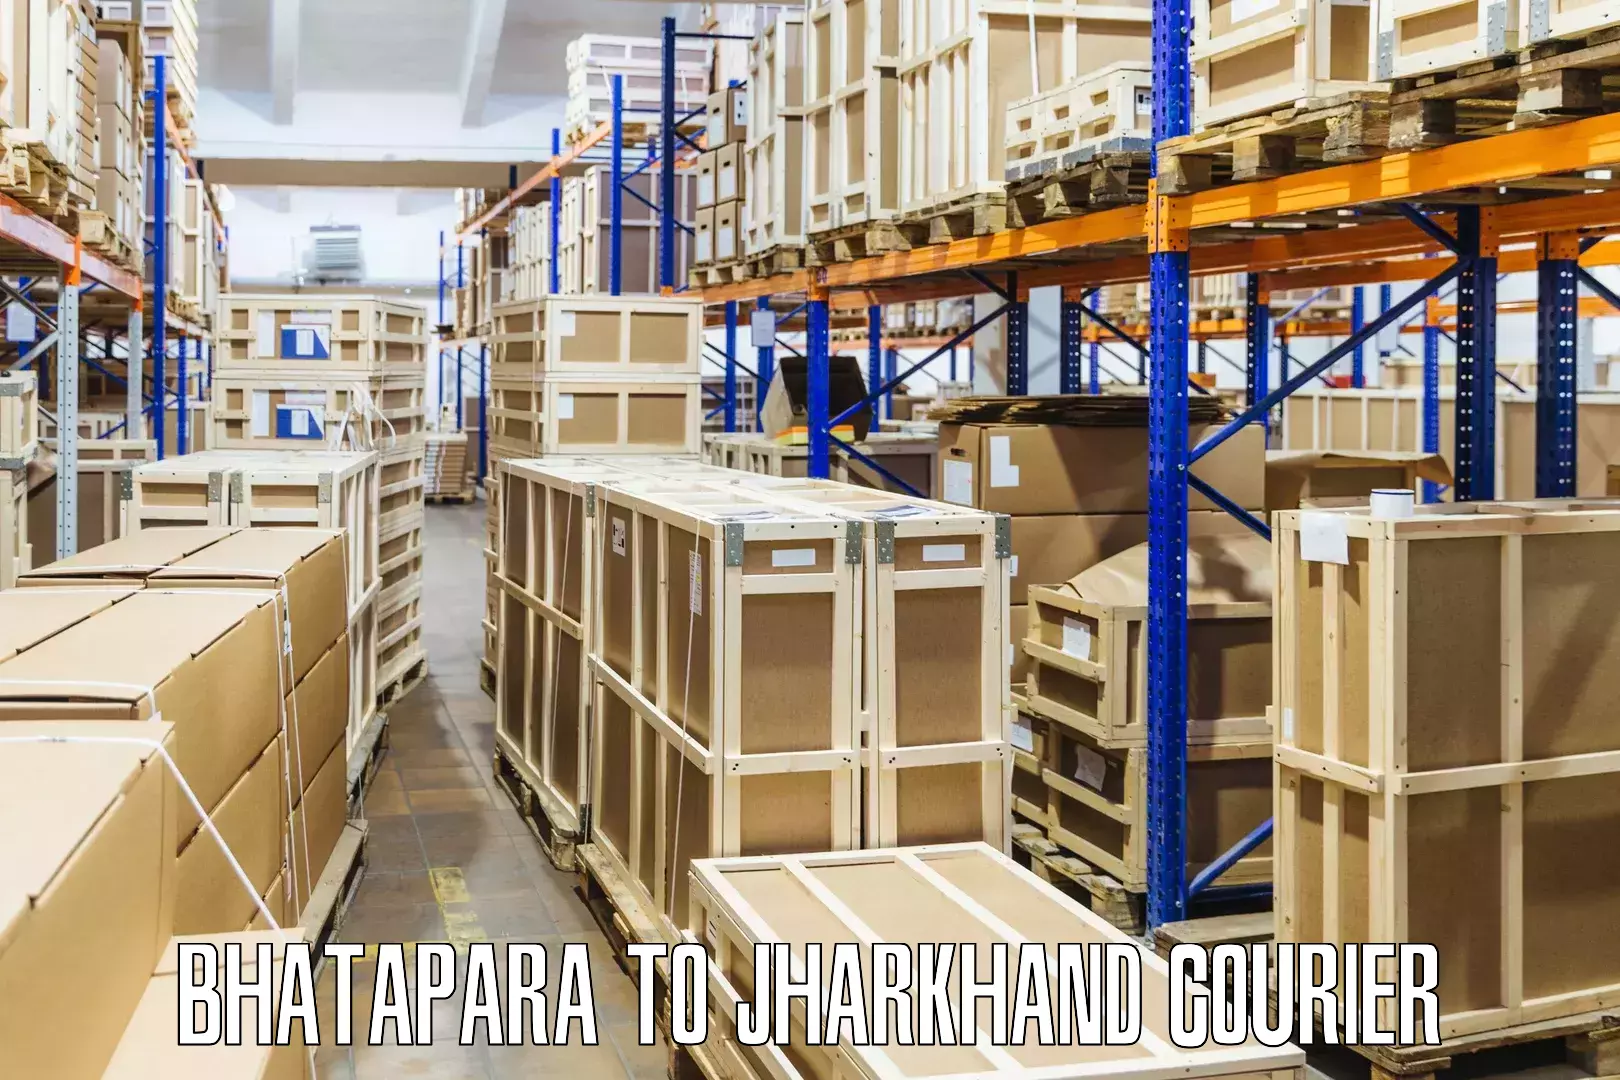 Round-the-clock parcel delivery Bhatapara to Mahagama